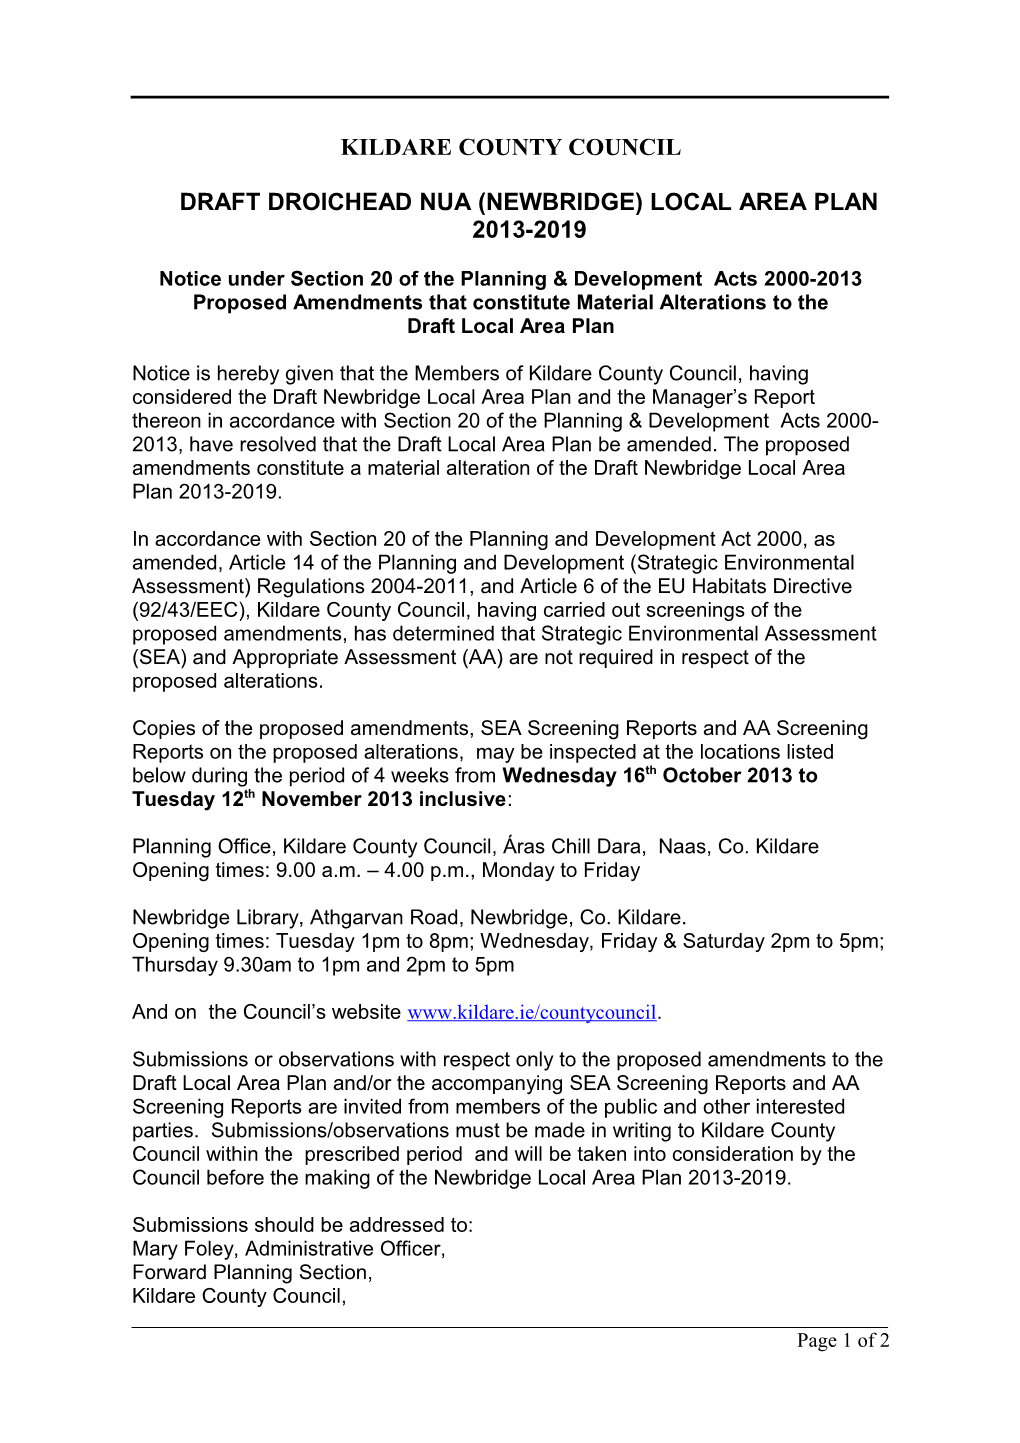 Draft Droichead Nua (Newbridge) Local Area Plan 2013-2019